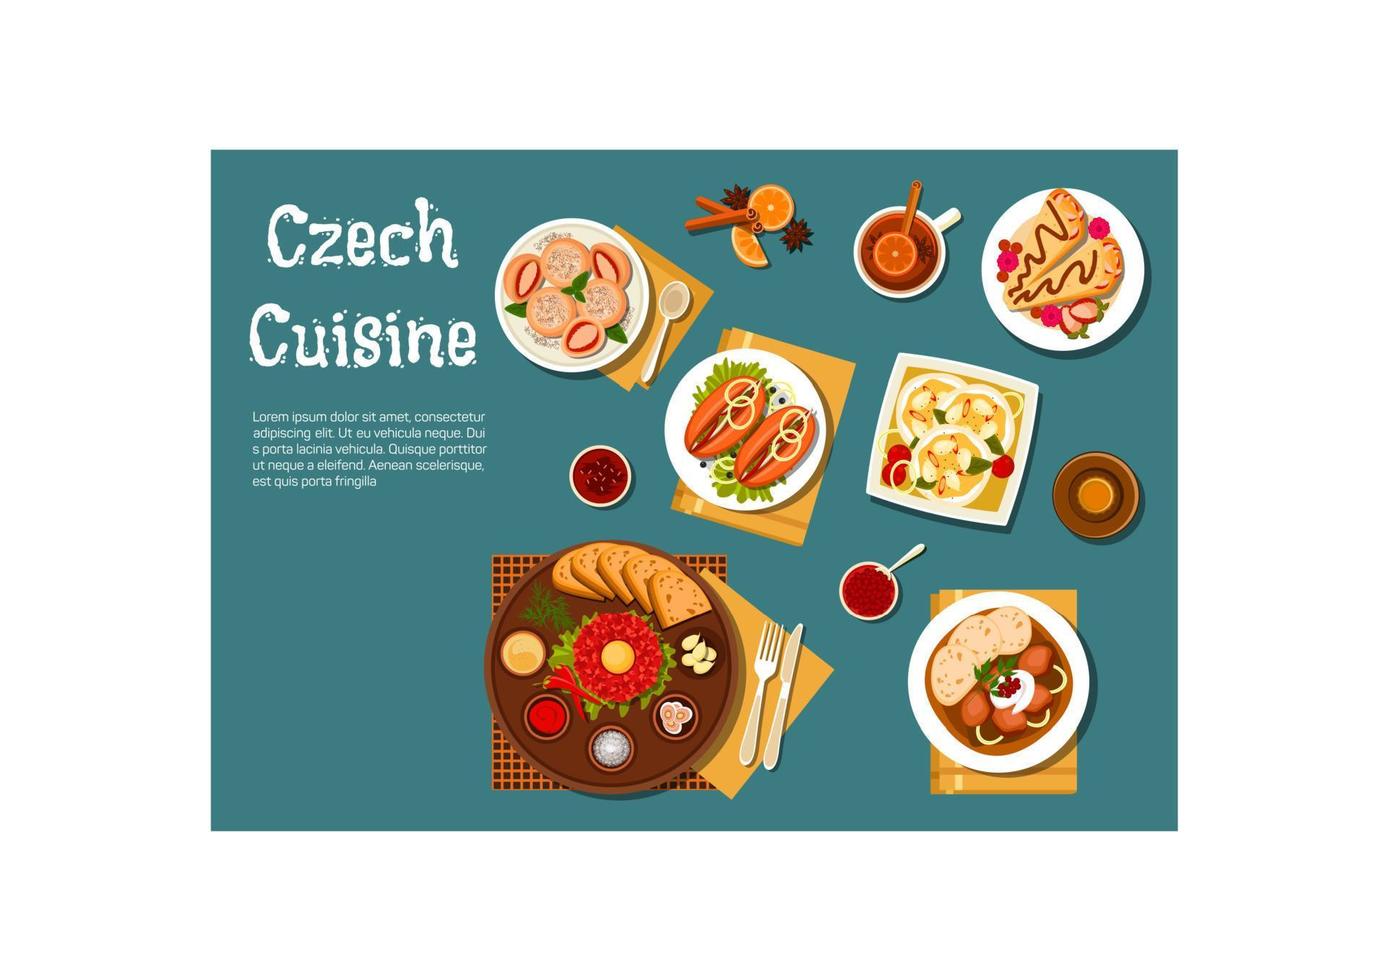 nationale tschechische küche nahrhafte gerichte vektor